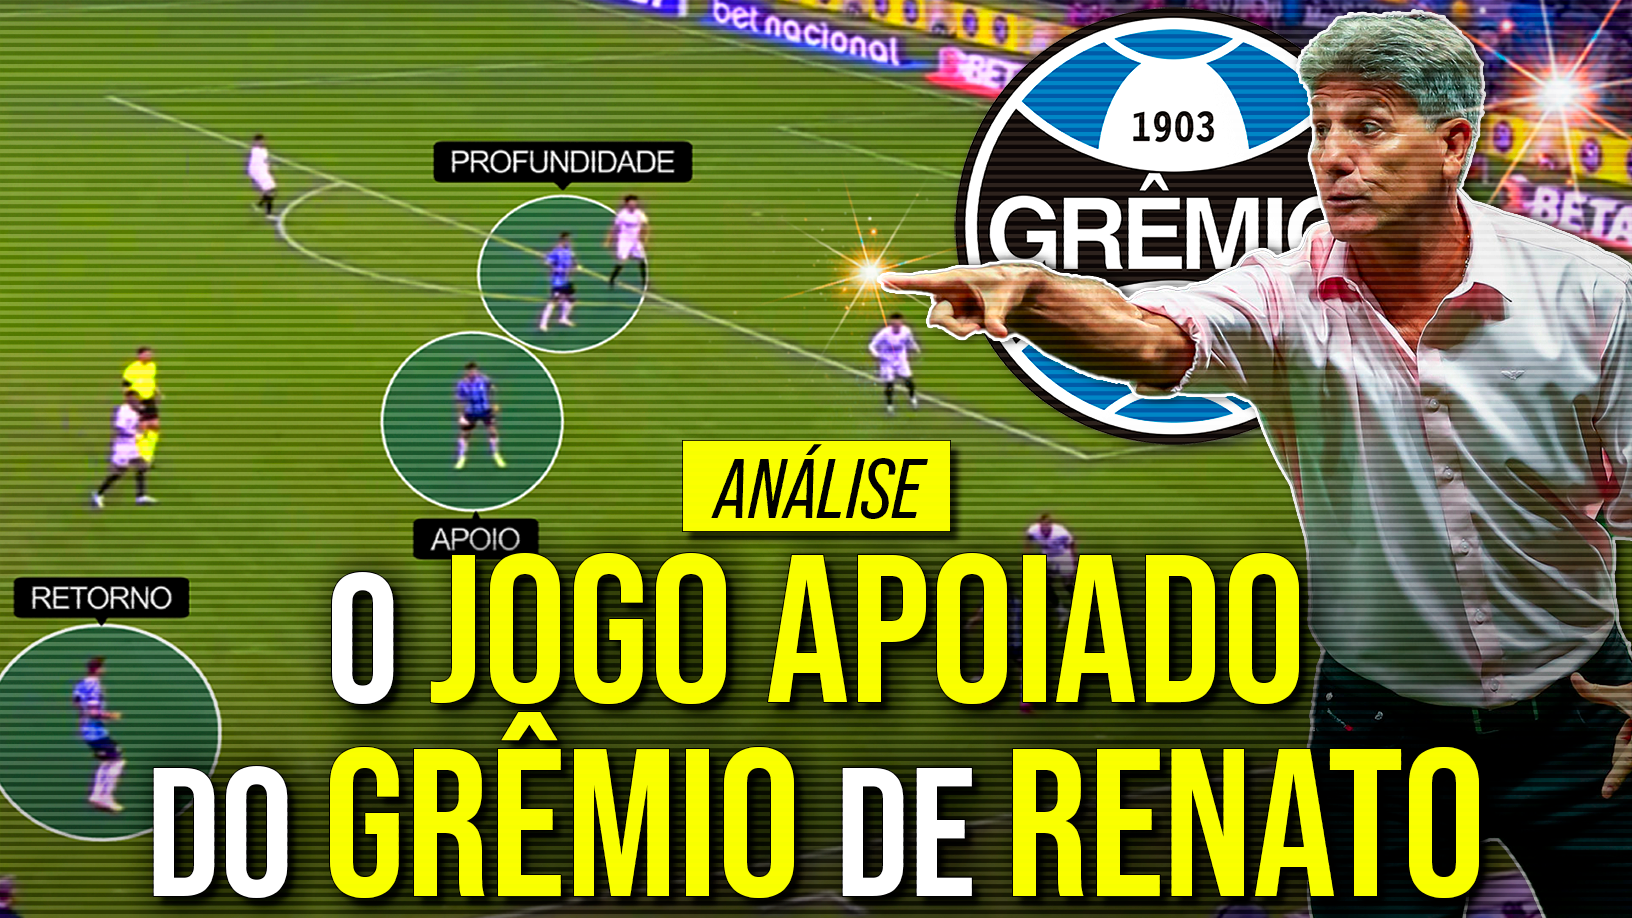 A tática de ataque do Grêmio de Renato: o jogo apoiado